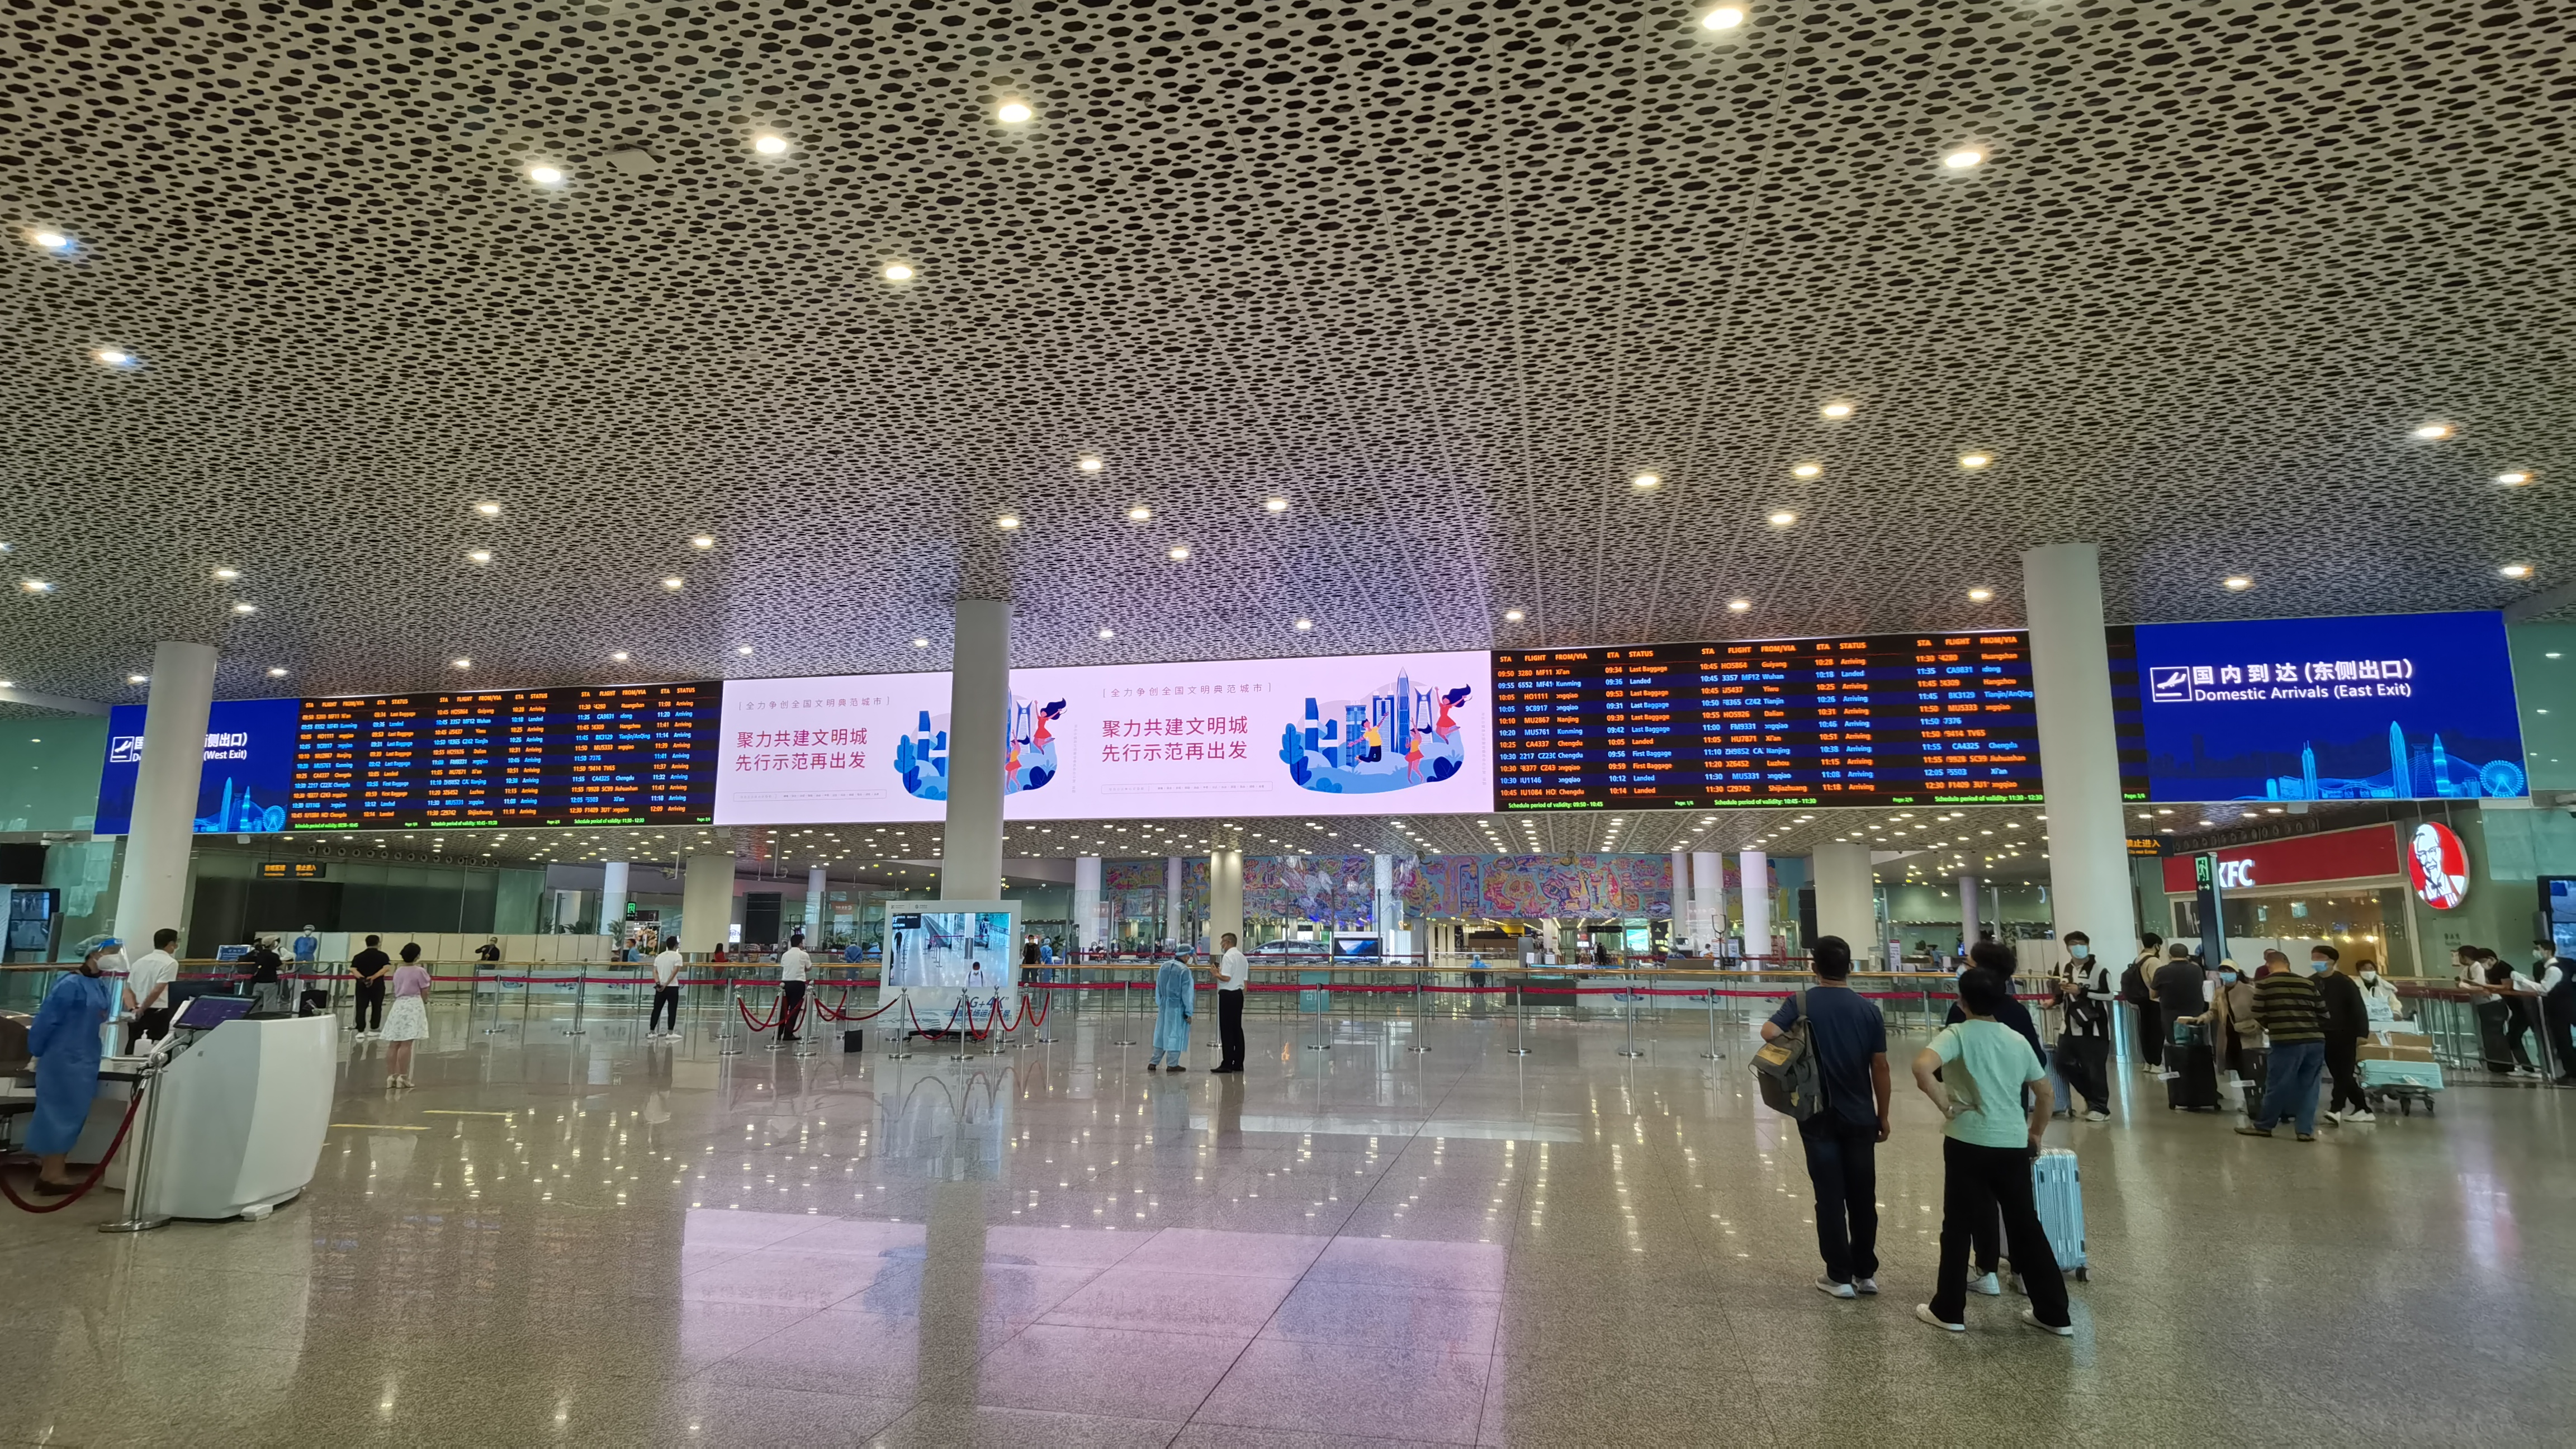 视爵光旭深圳宝安国际机场LED显示屏项目